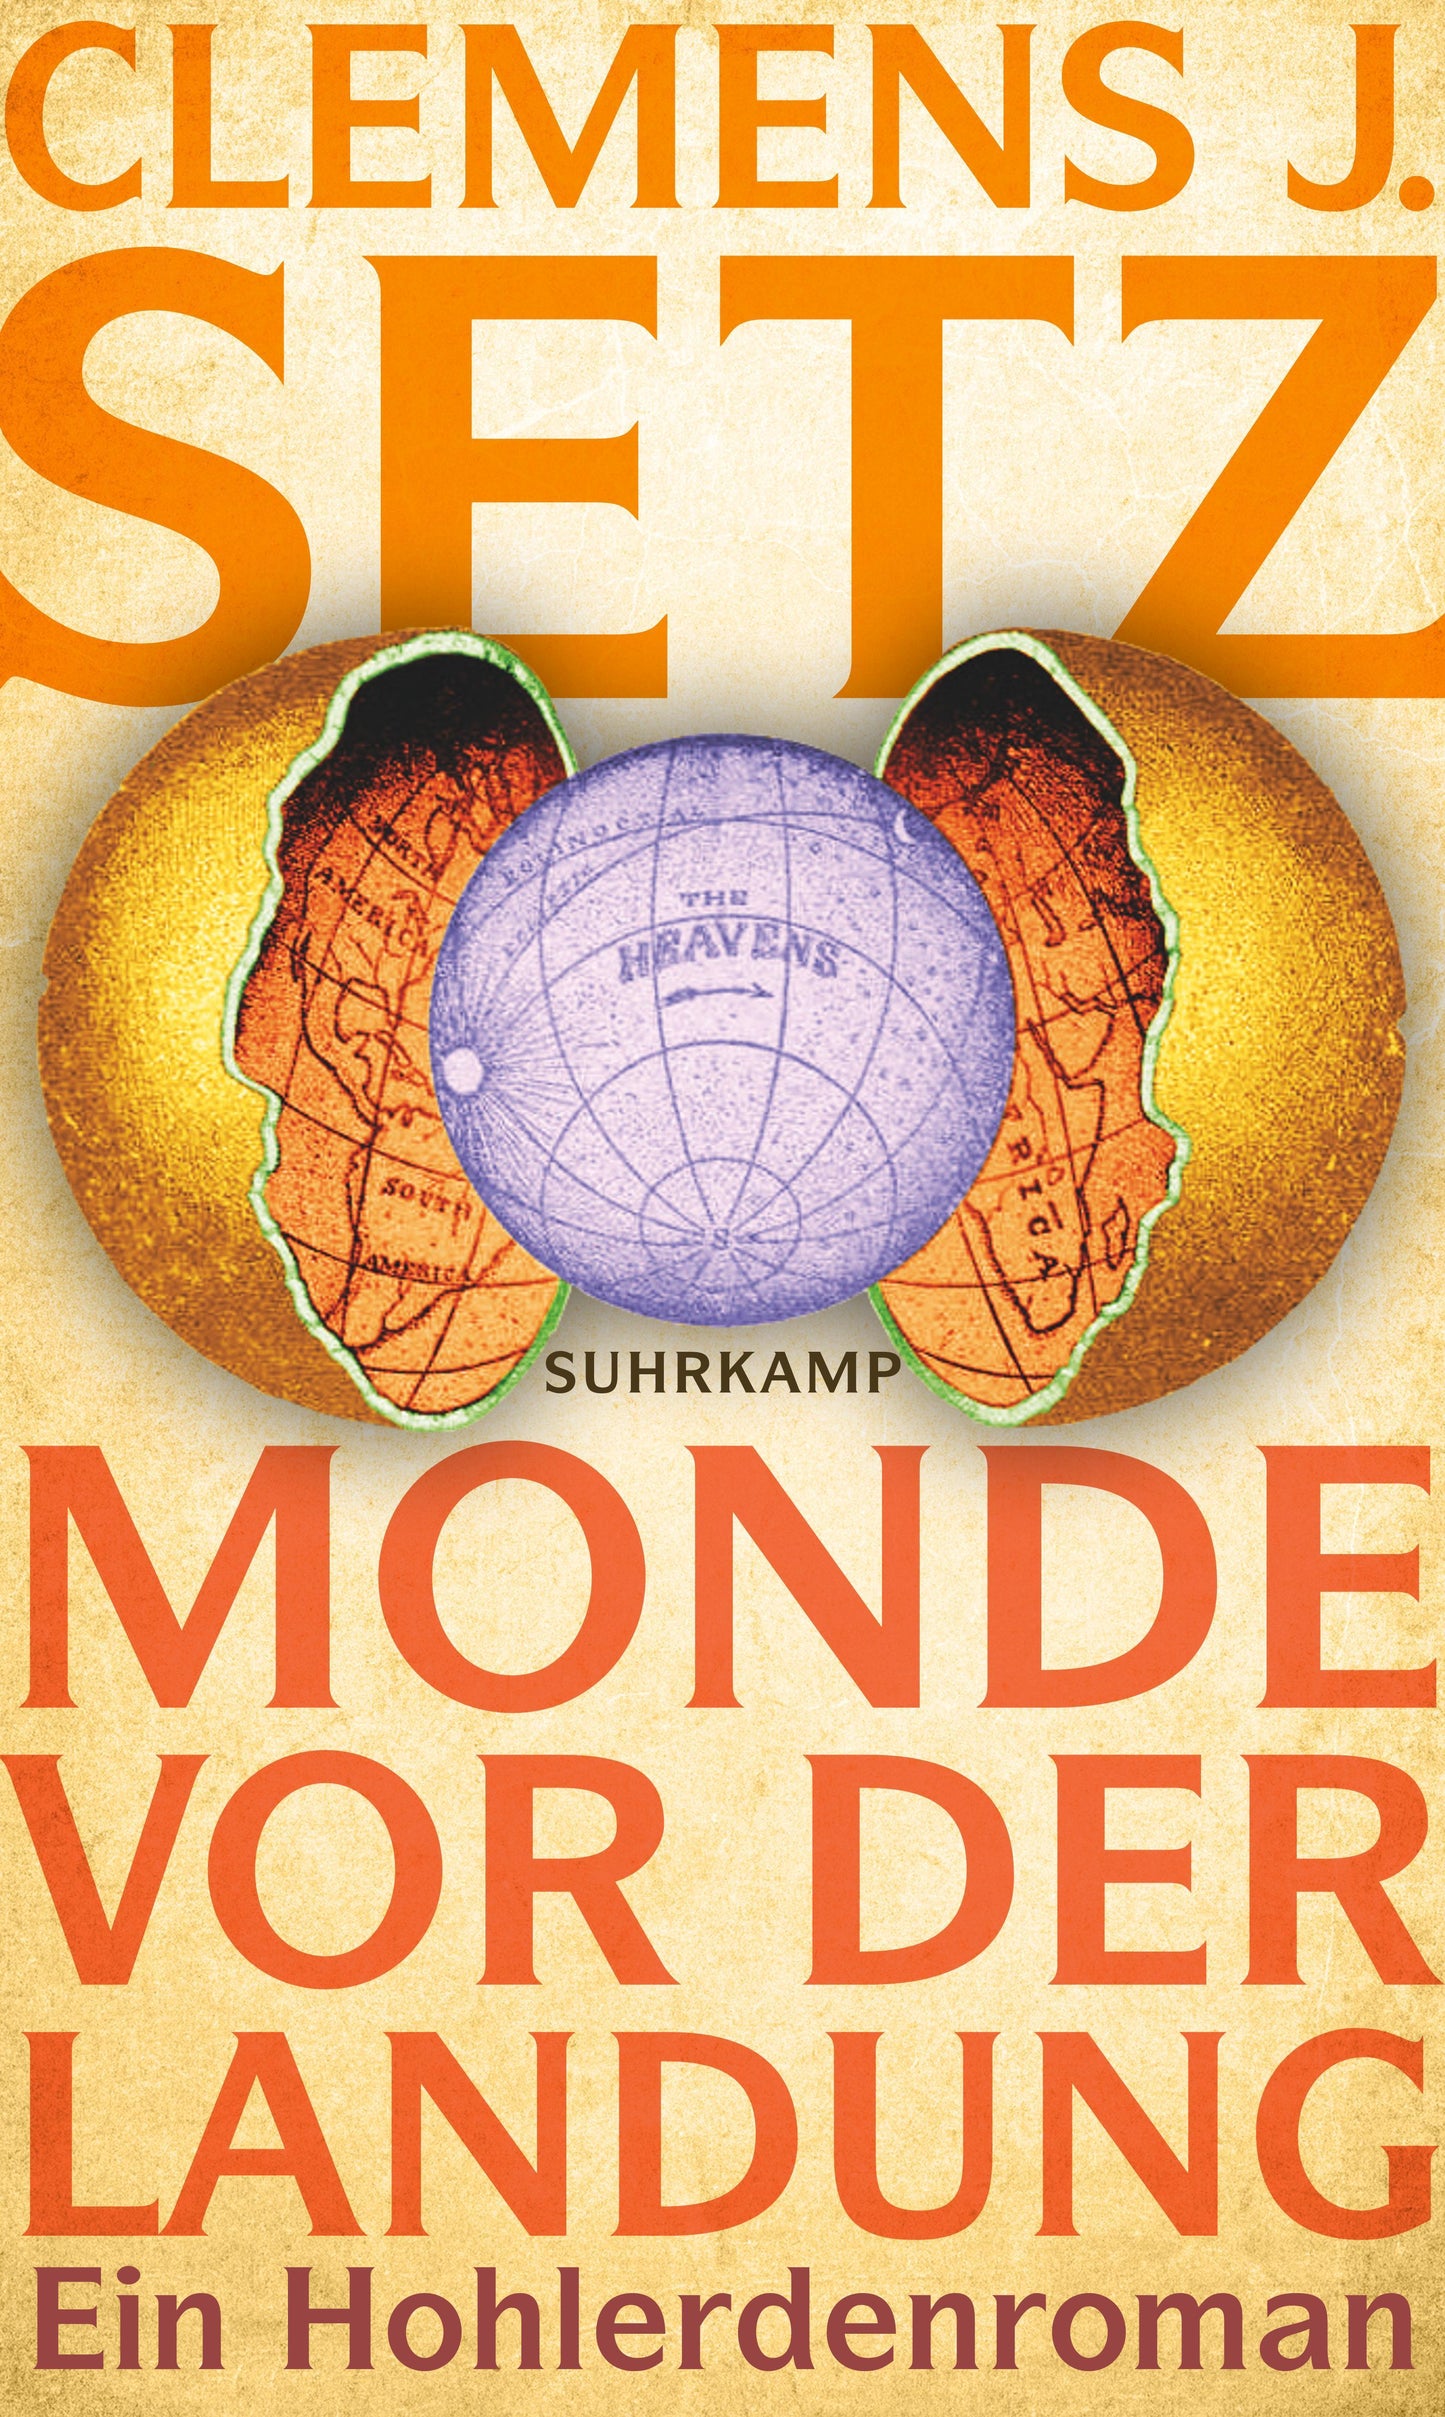 Monde vor der Landung: Roman | Das neue Buch des Georg-Büchner-Preisträgers